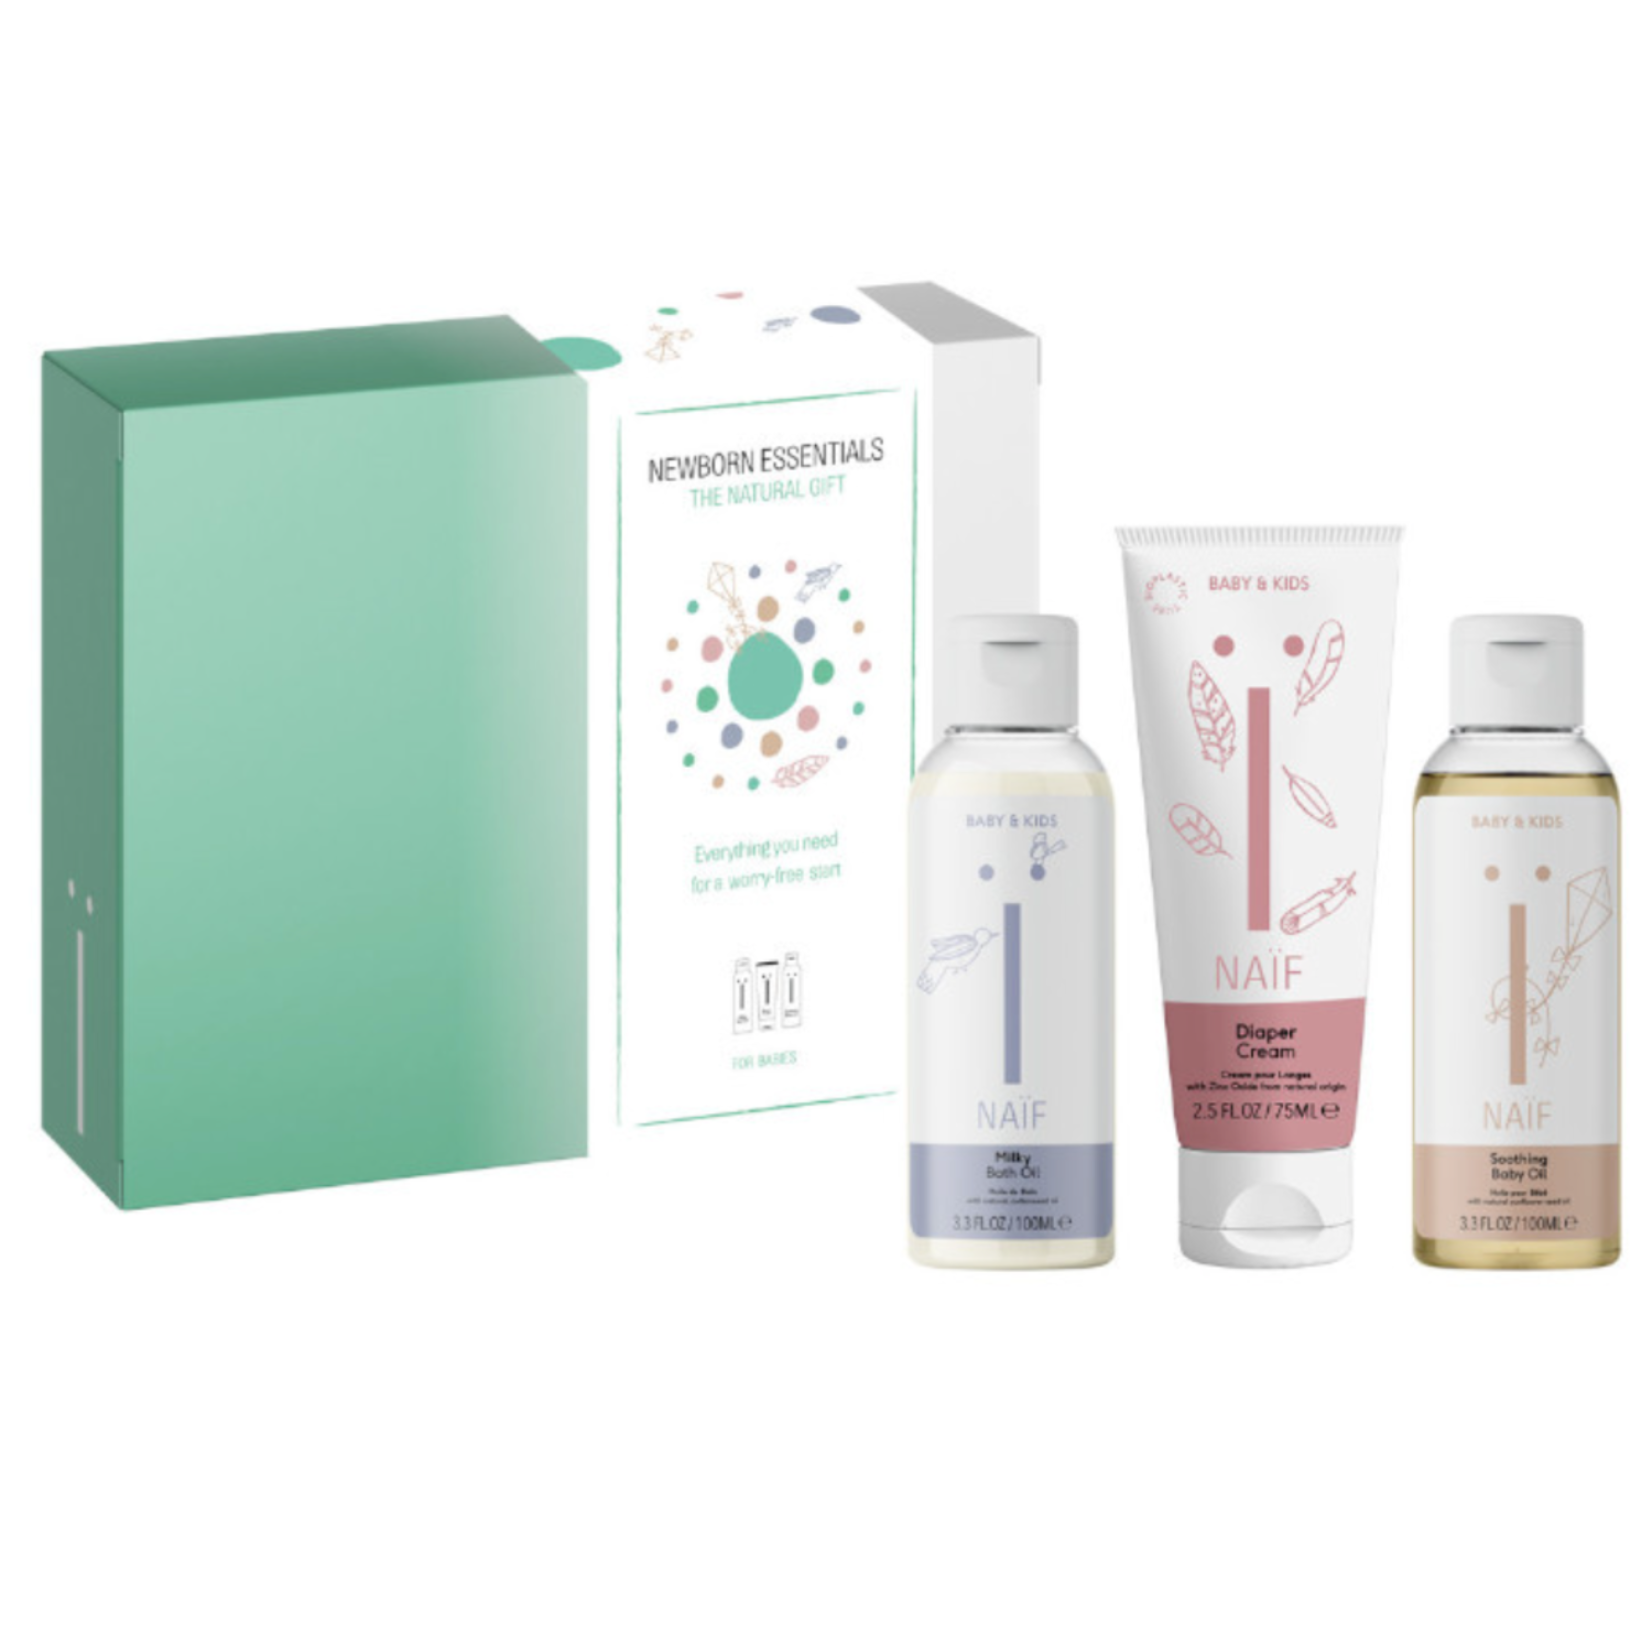 Naif Naif - Newborn Essentials (bath oil 100ml. diaper cream 75ml. baby oil 100ml)Box